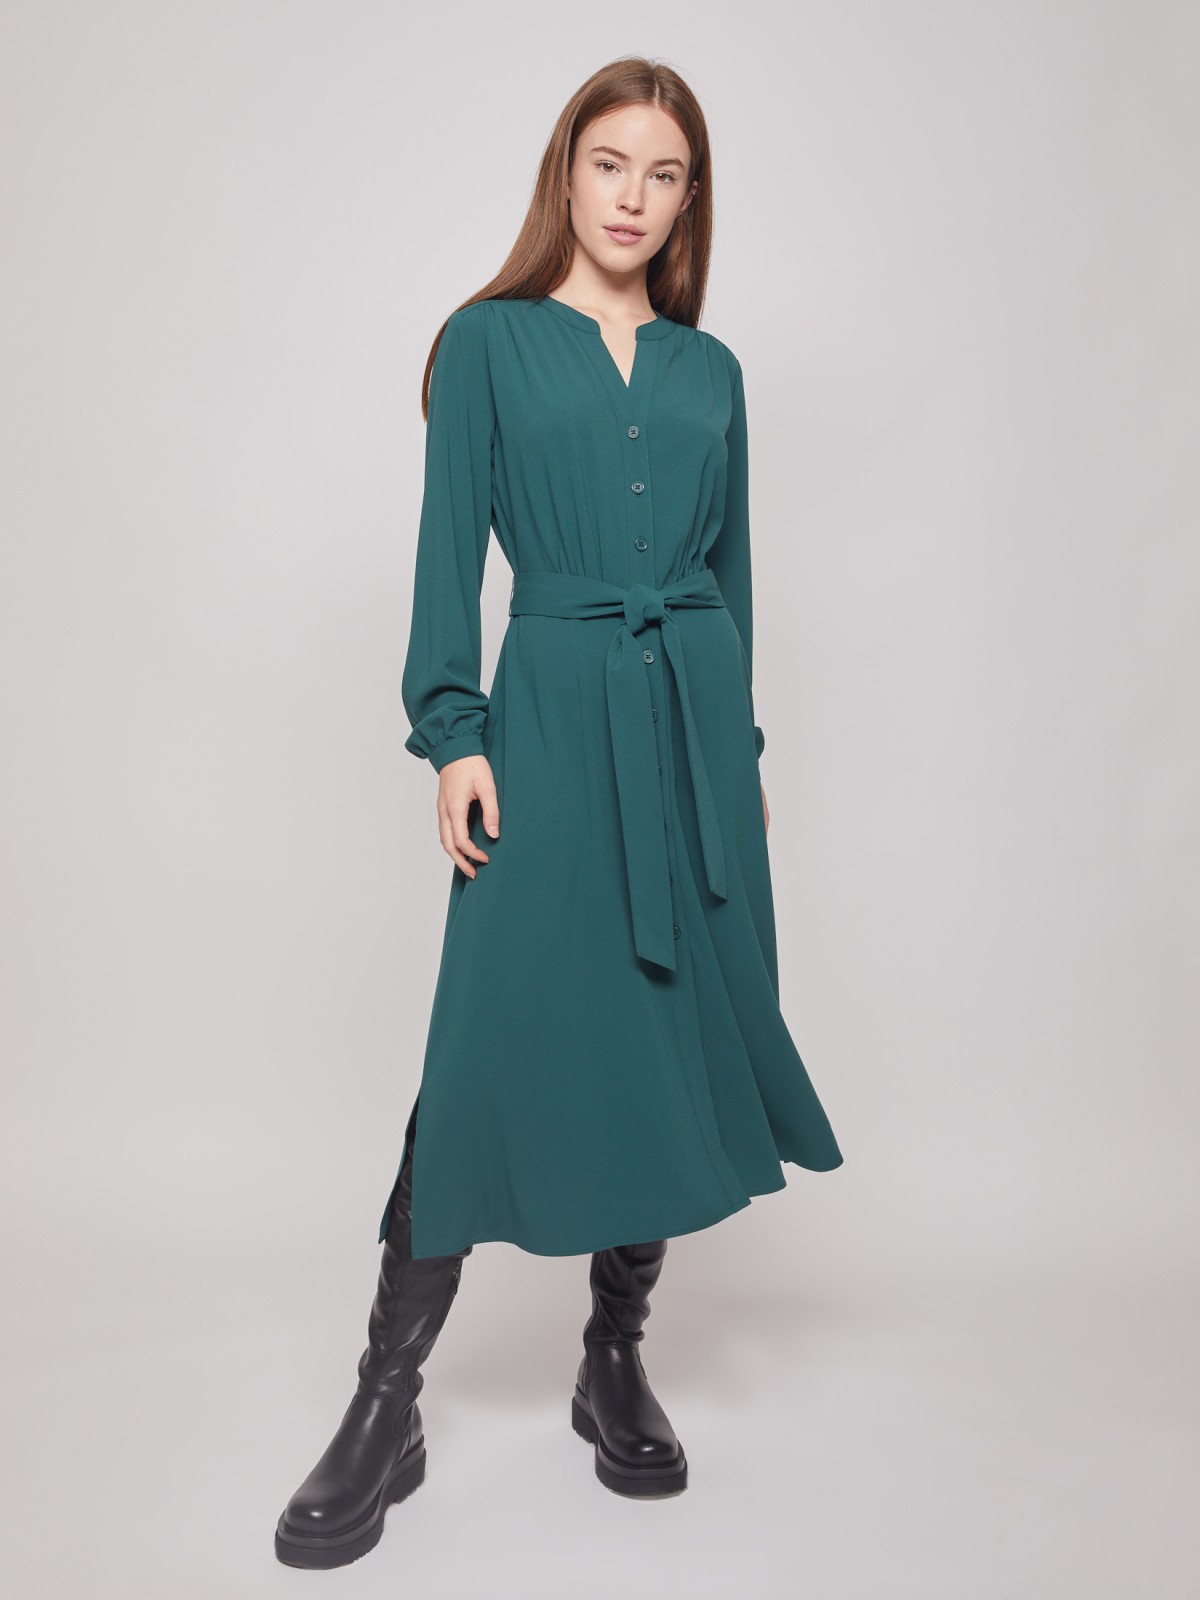 Платье-рубашка с длинными рукавами Zolla, цвет Темно-зеленый, размер S